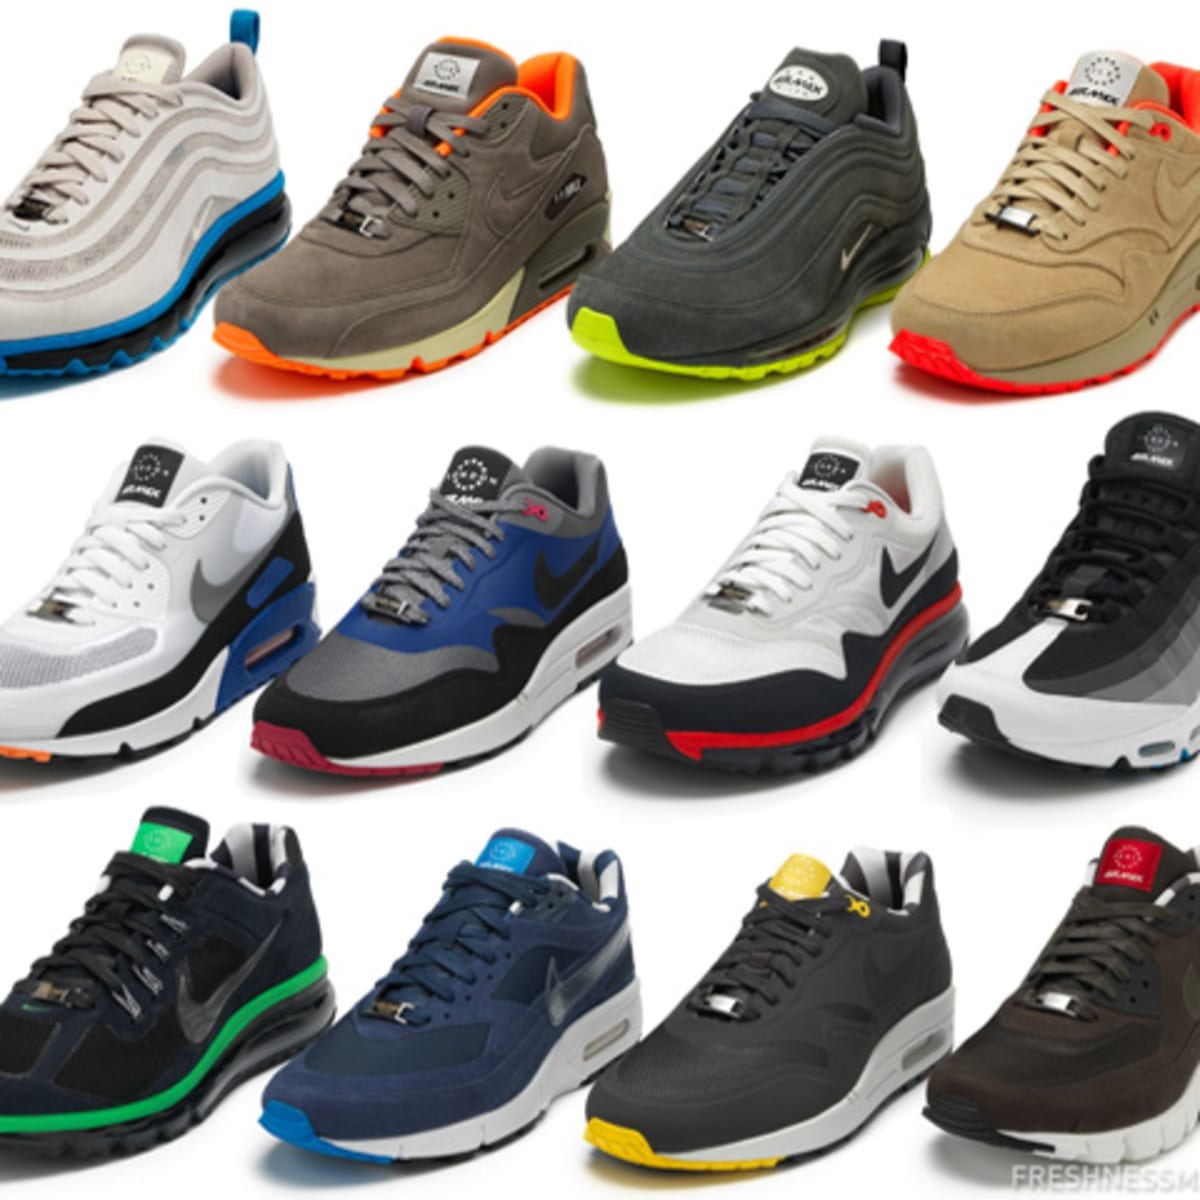 Обувь какой фирмы лучше. Обувь и красофка мужское 2022. Nike Air Max коллекция 2022г. Обувь мужская найк Эйр. Кроссовки мужские фашион Air.